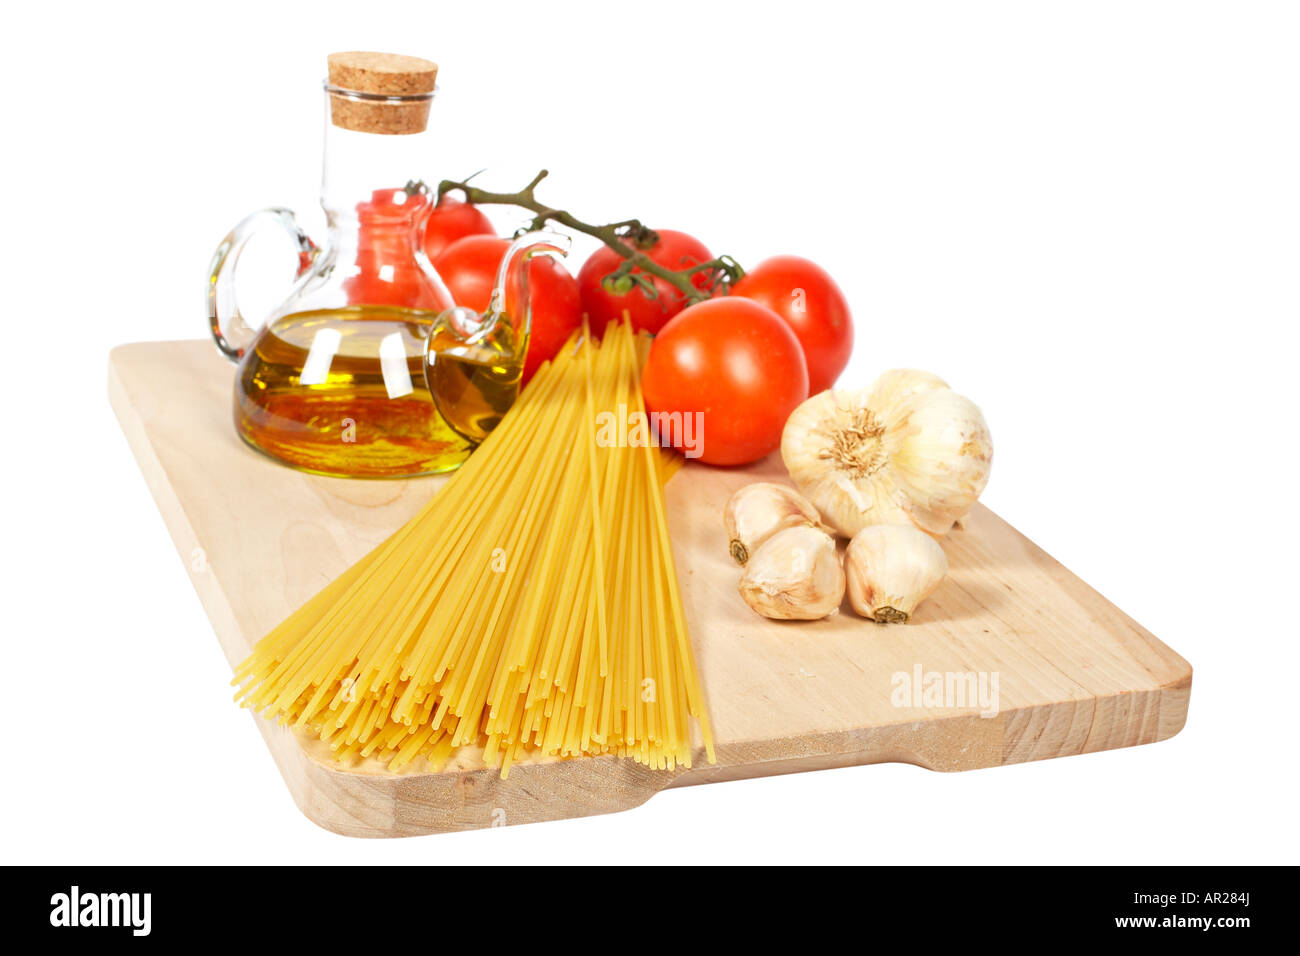 Pomodori olio d'oliva aglio e spaghetti isolati su sfondo bianco DOF poco profondo Foto Stock